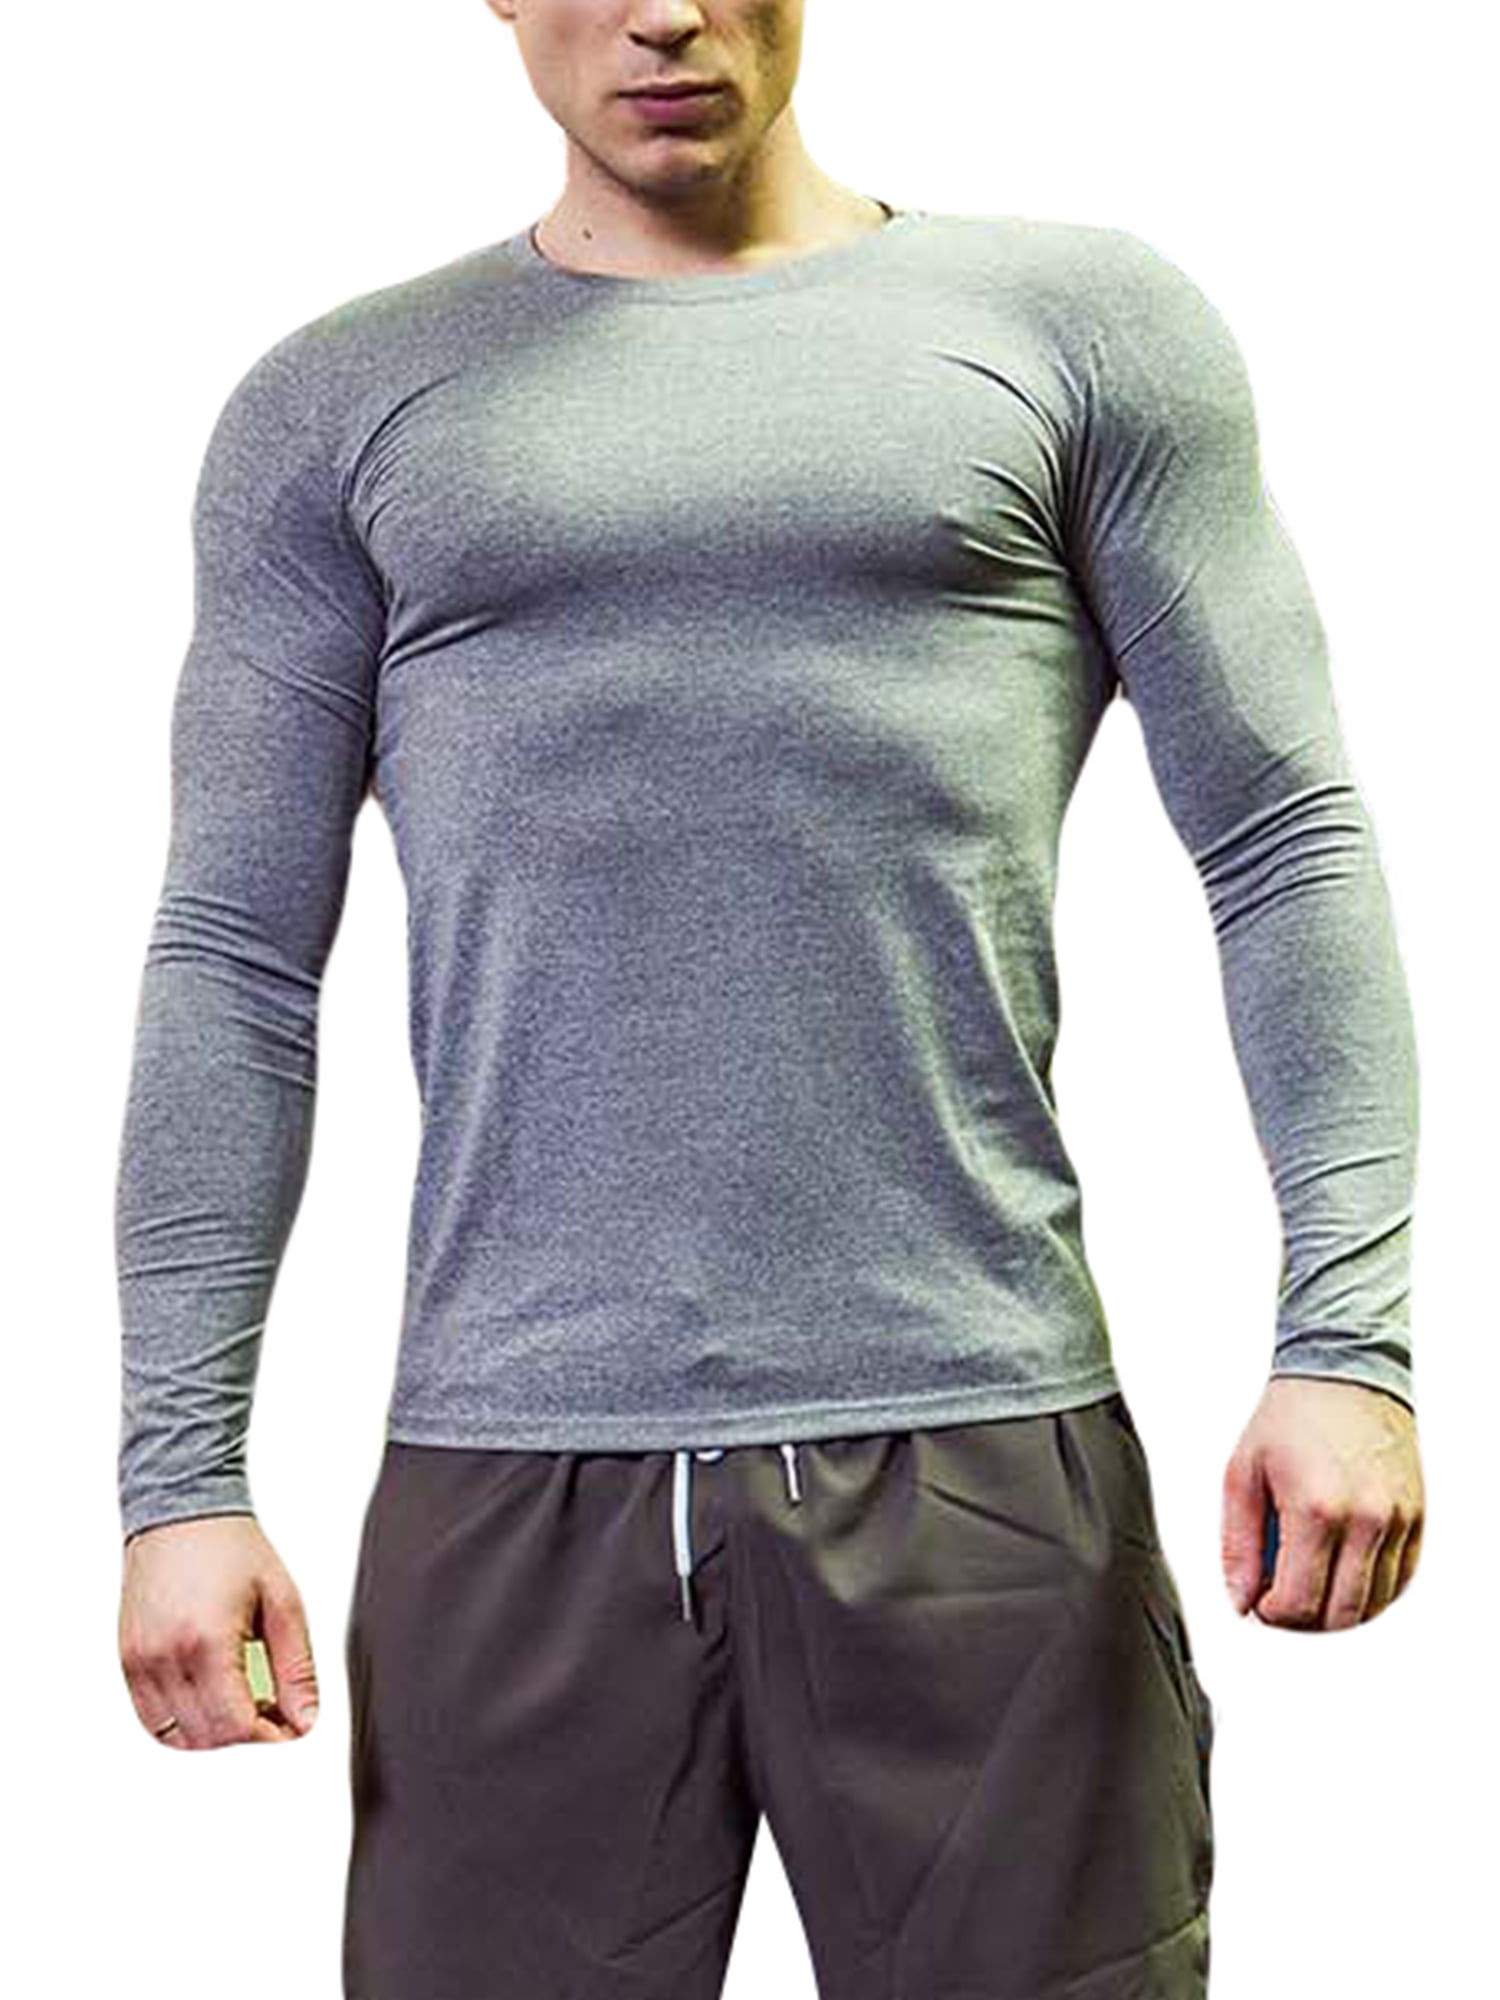 Fitness-Shirt Herren Fitness und Workout T-Shirt Sport-Shirt Gry Tops Tee 